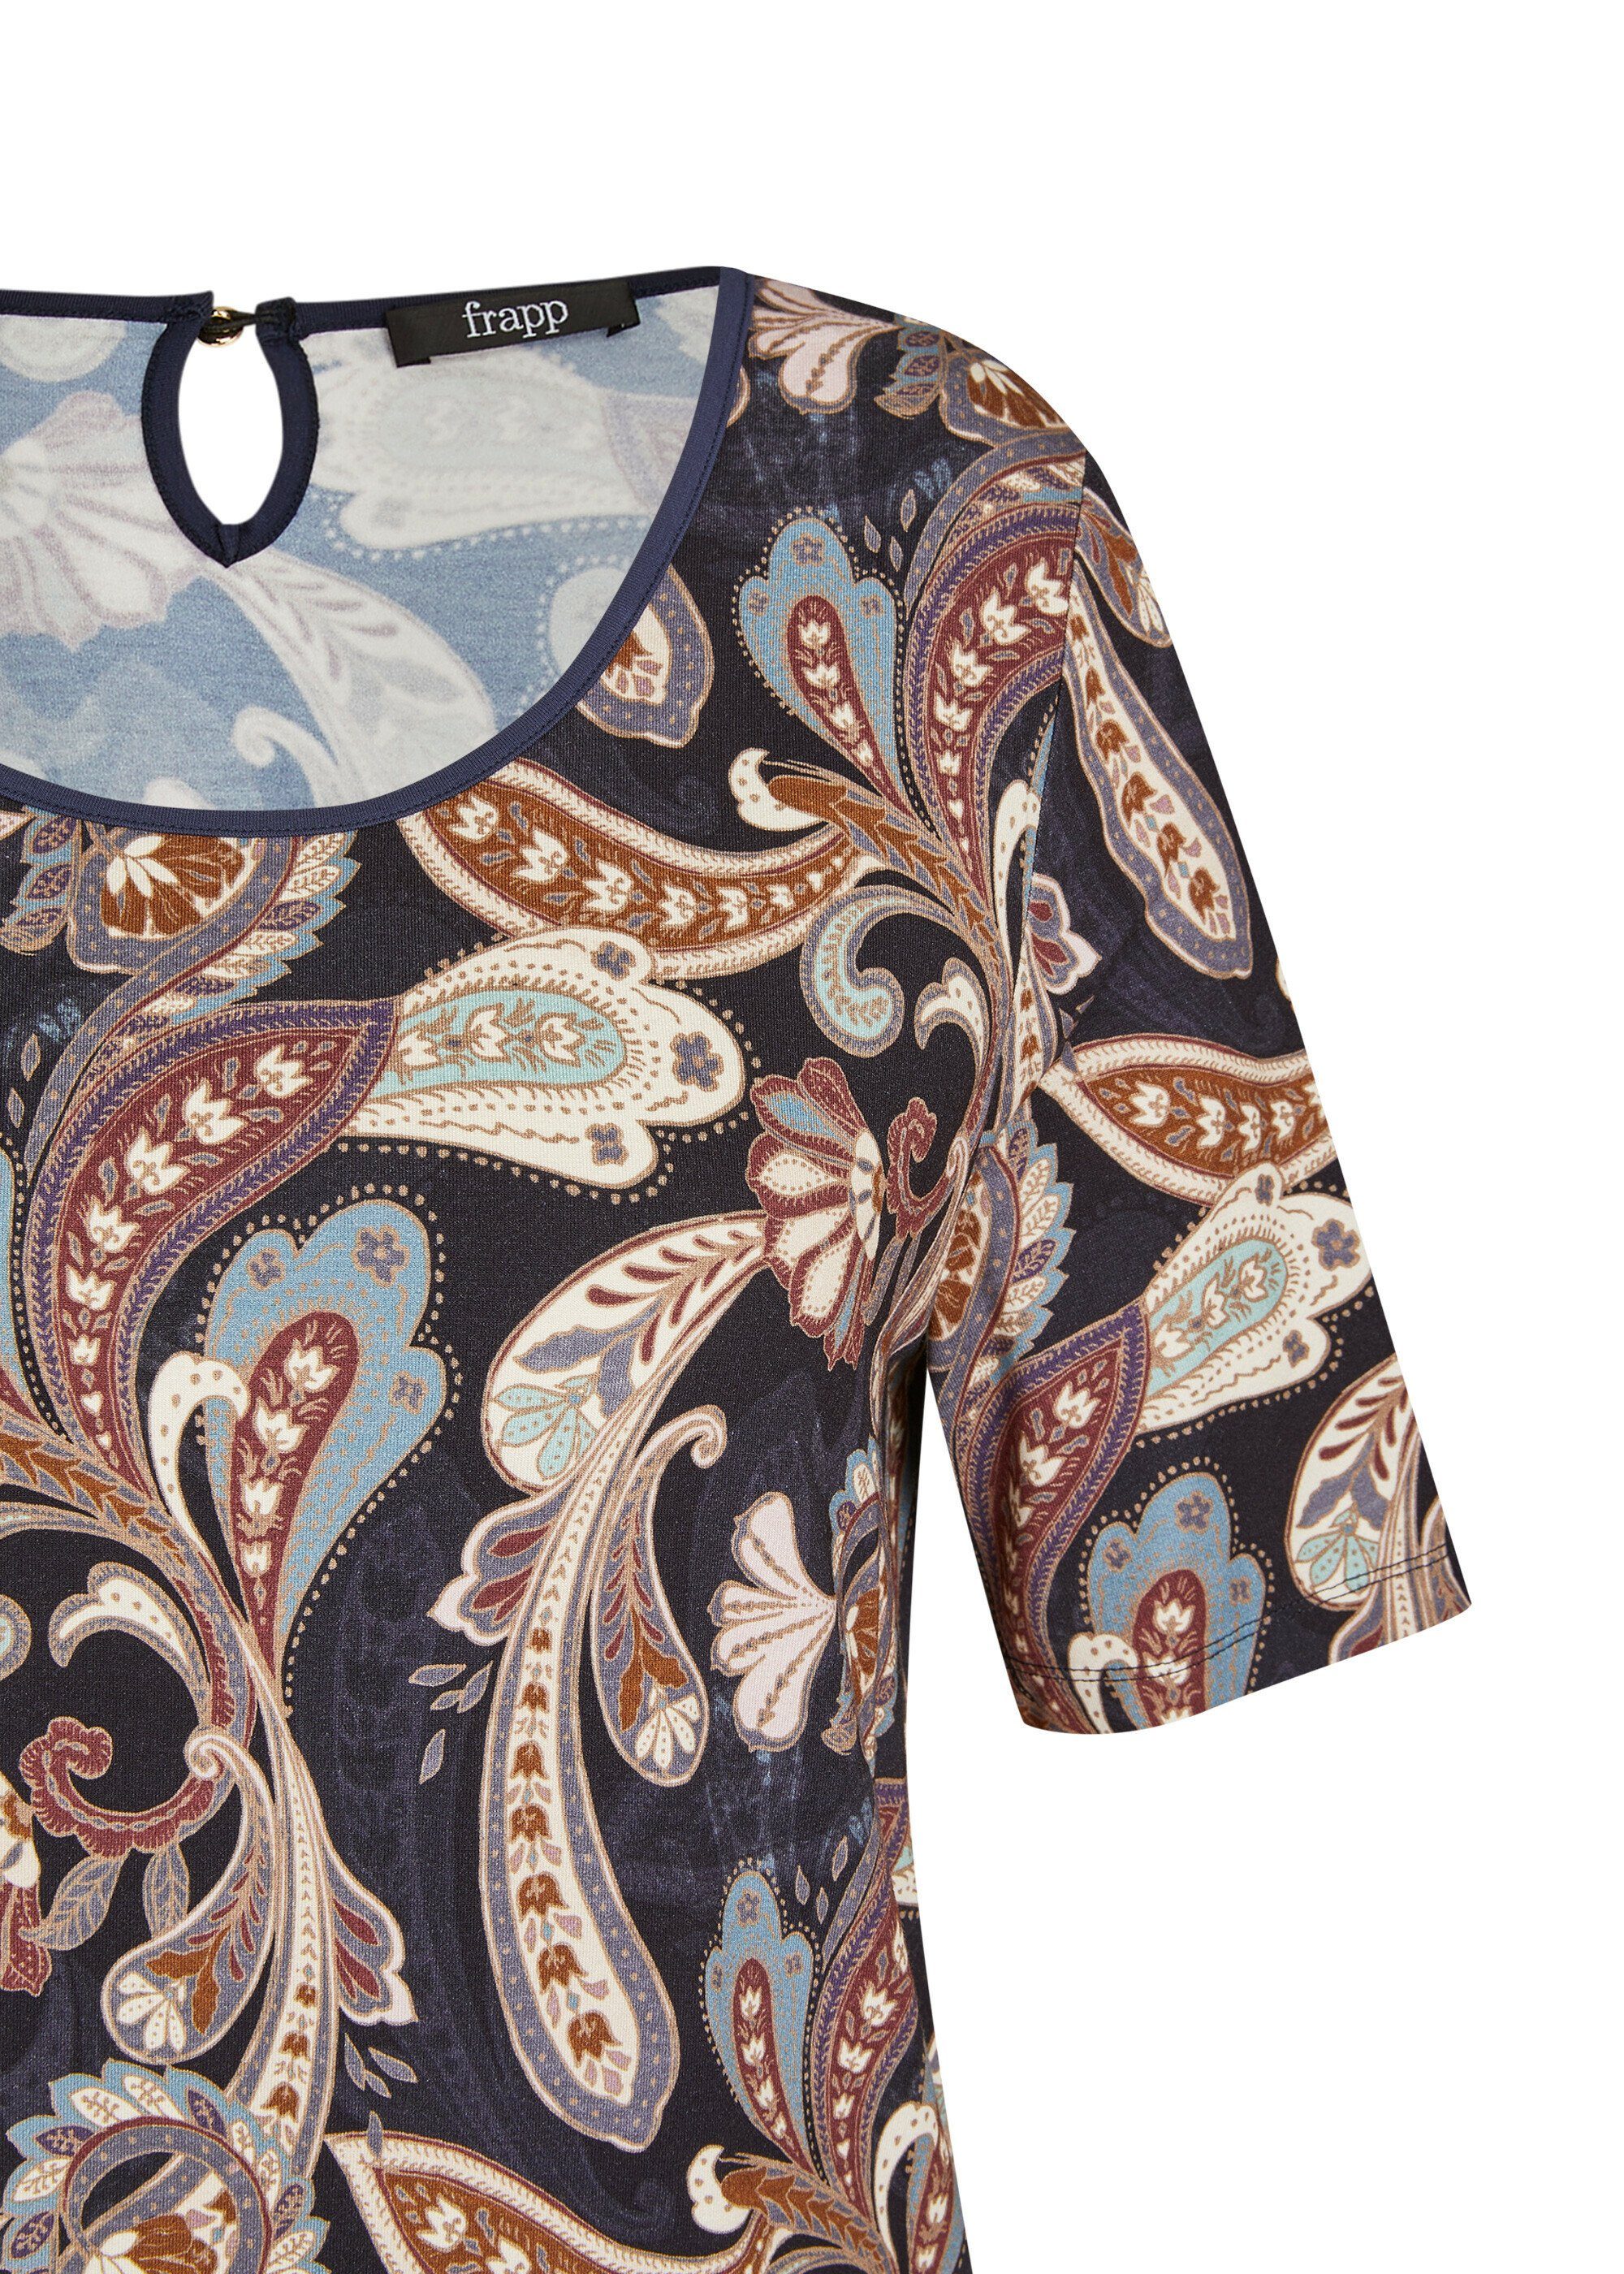 Print-Shirt FRAPP orientalischem Romantisches T-Shirt mit Muster